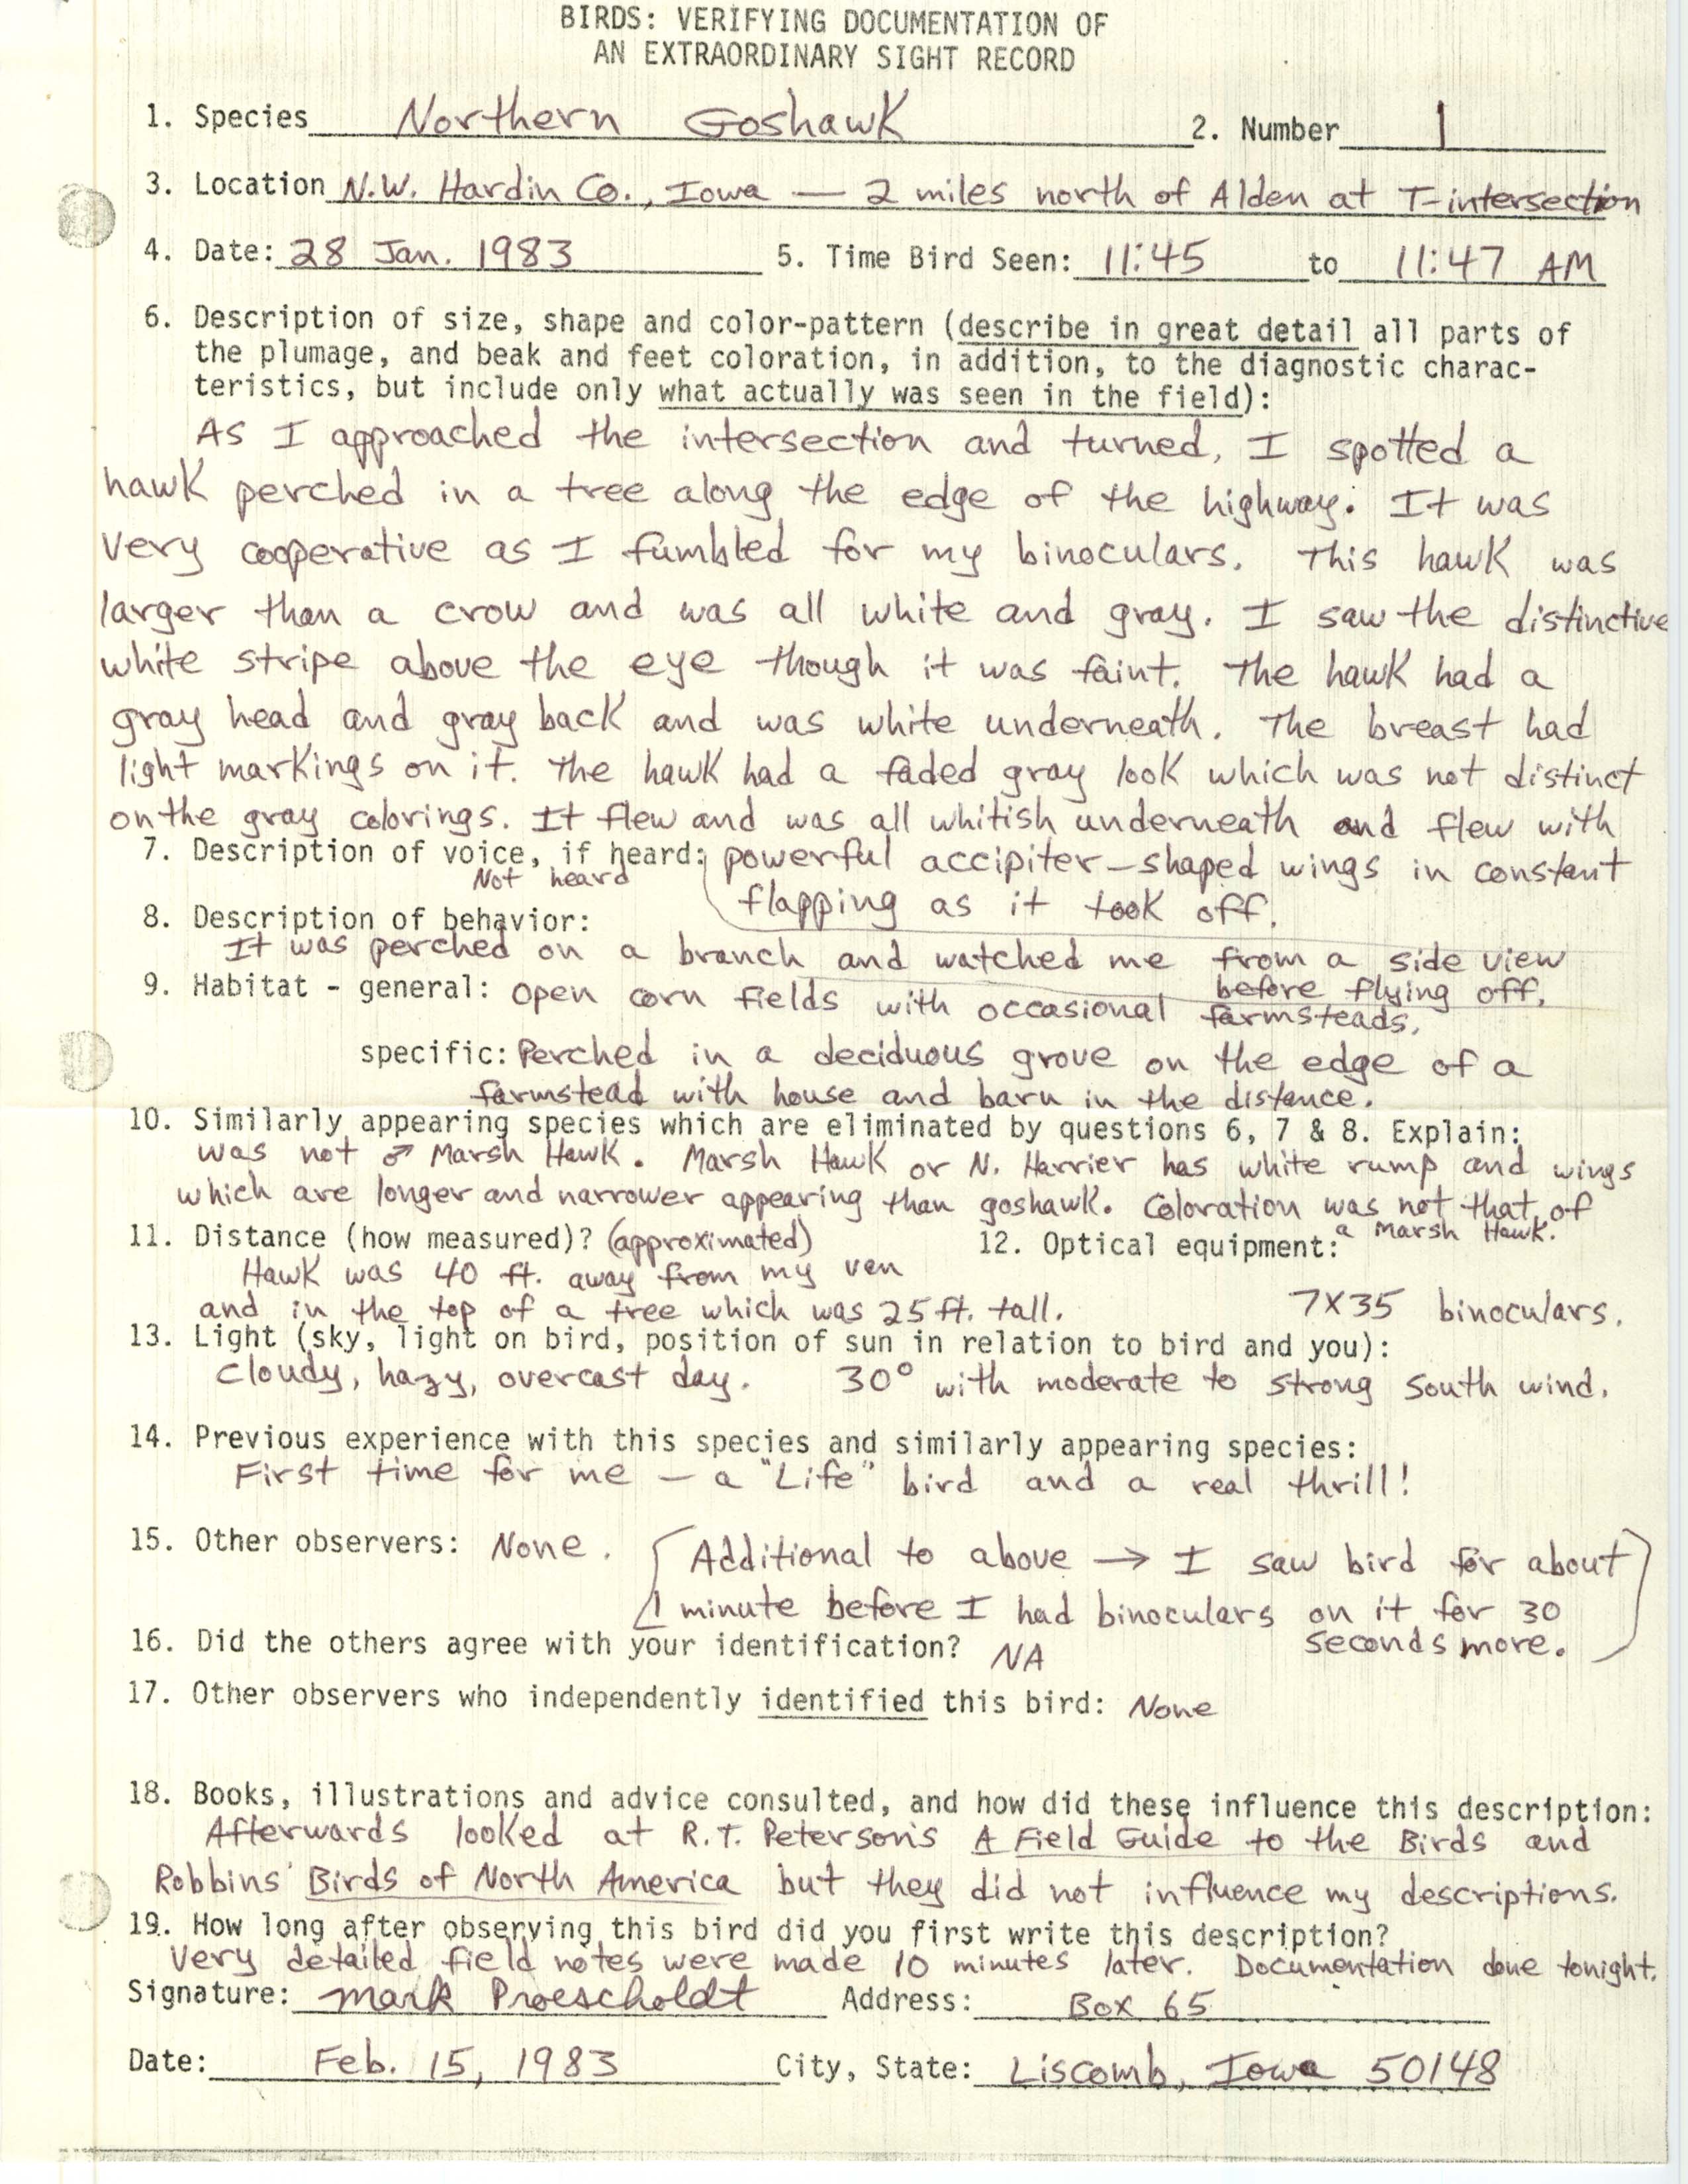 Rare bird documentation form for Northern Goshawk at Alden, 1983